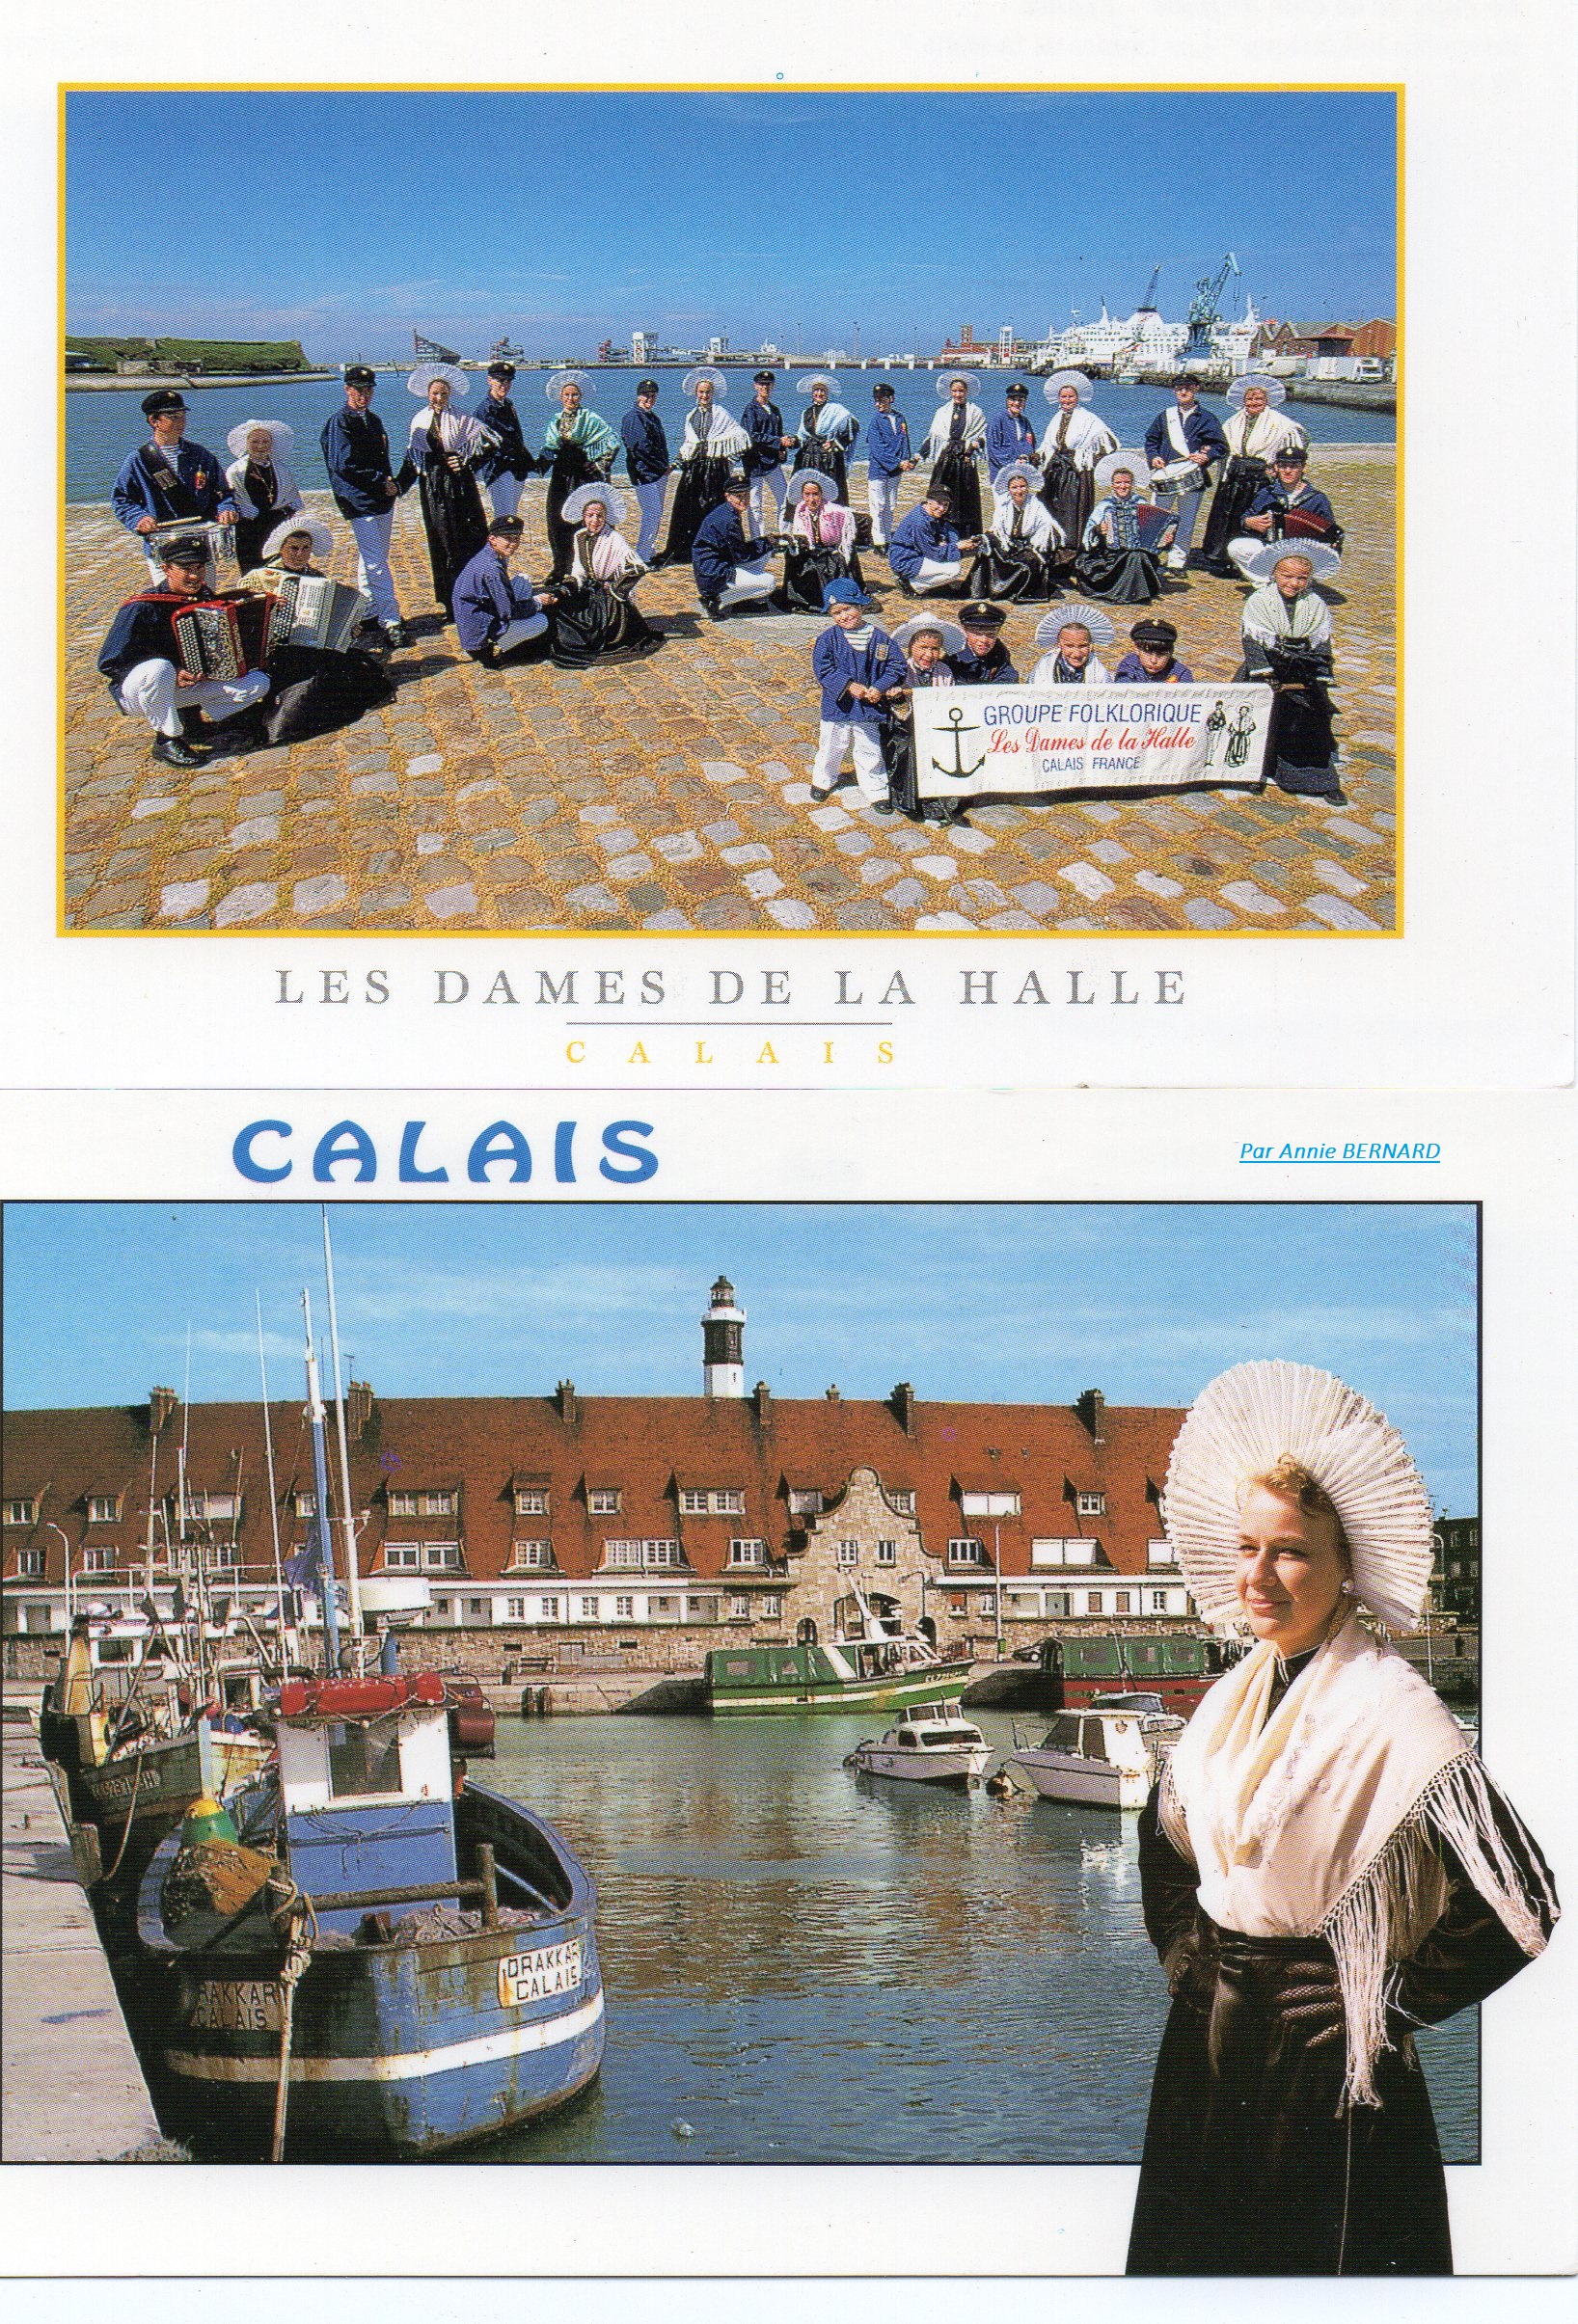 Le Groupe folklorique: Les Dames de la Halle créé en 1991